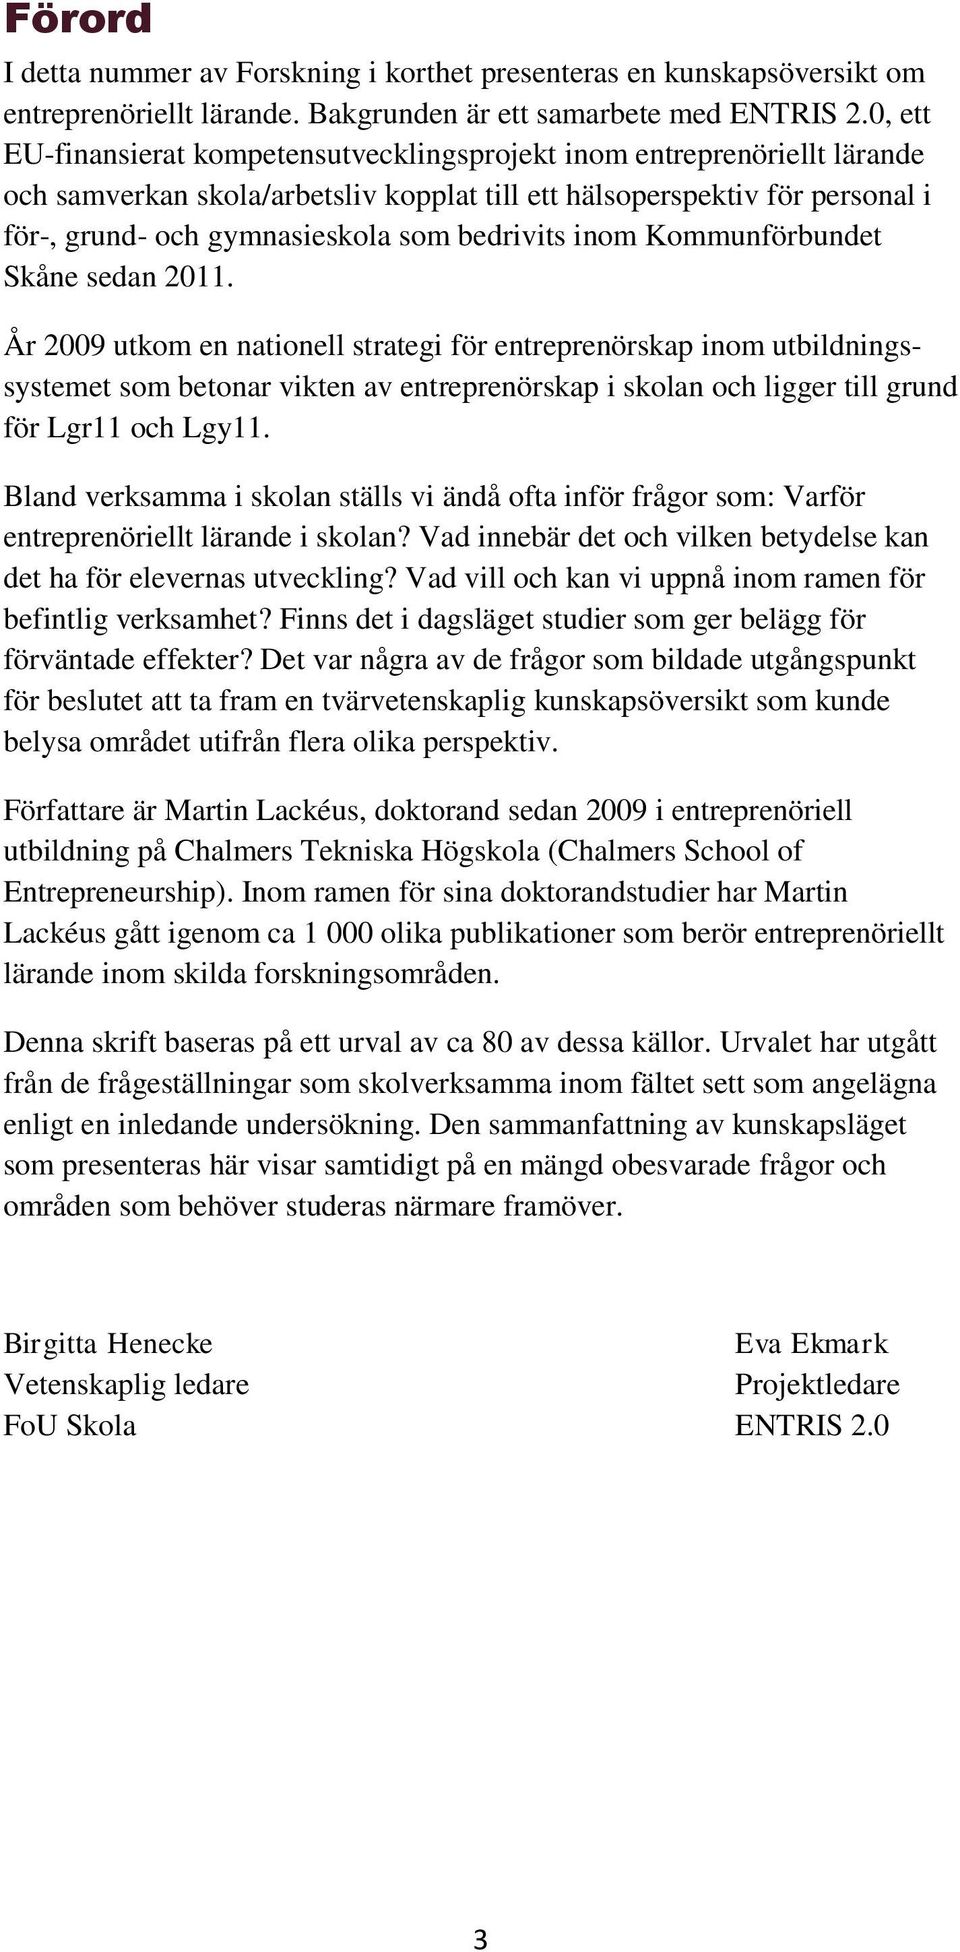 bedrivits inom Kommunförbundet Skåne sedan 2011.